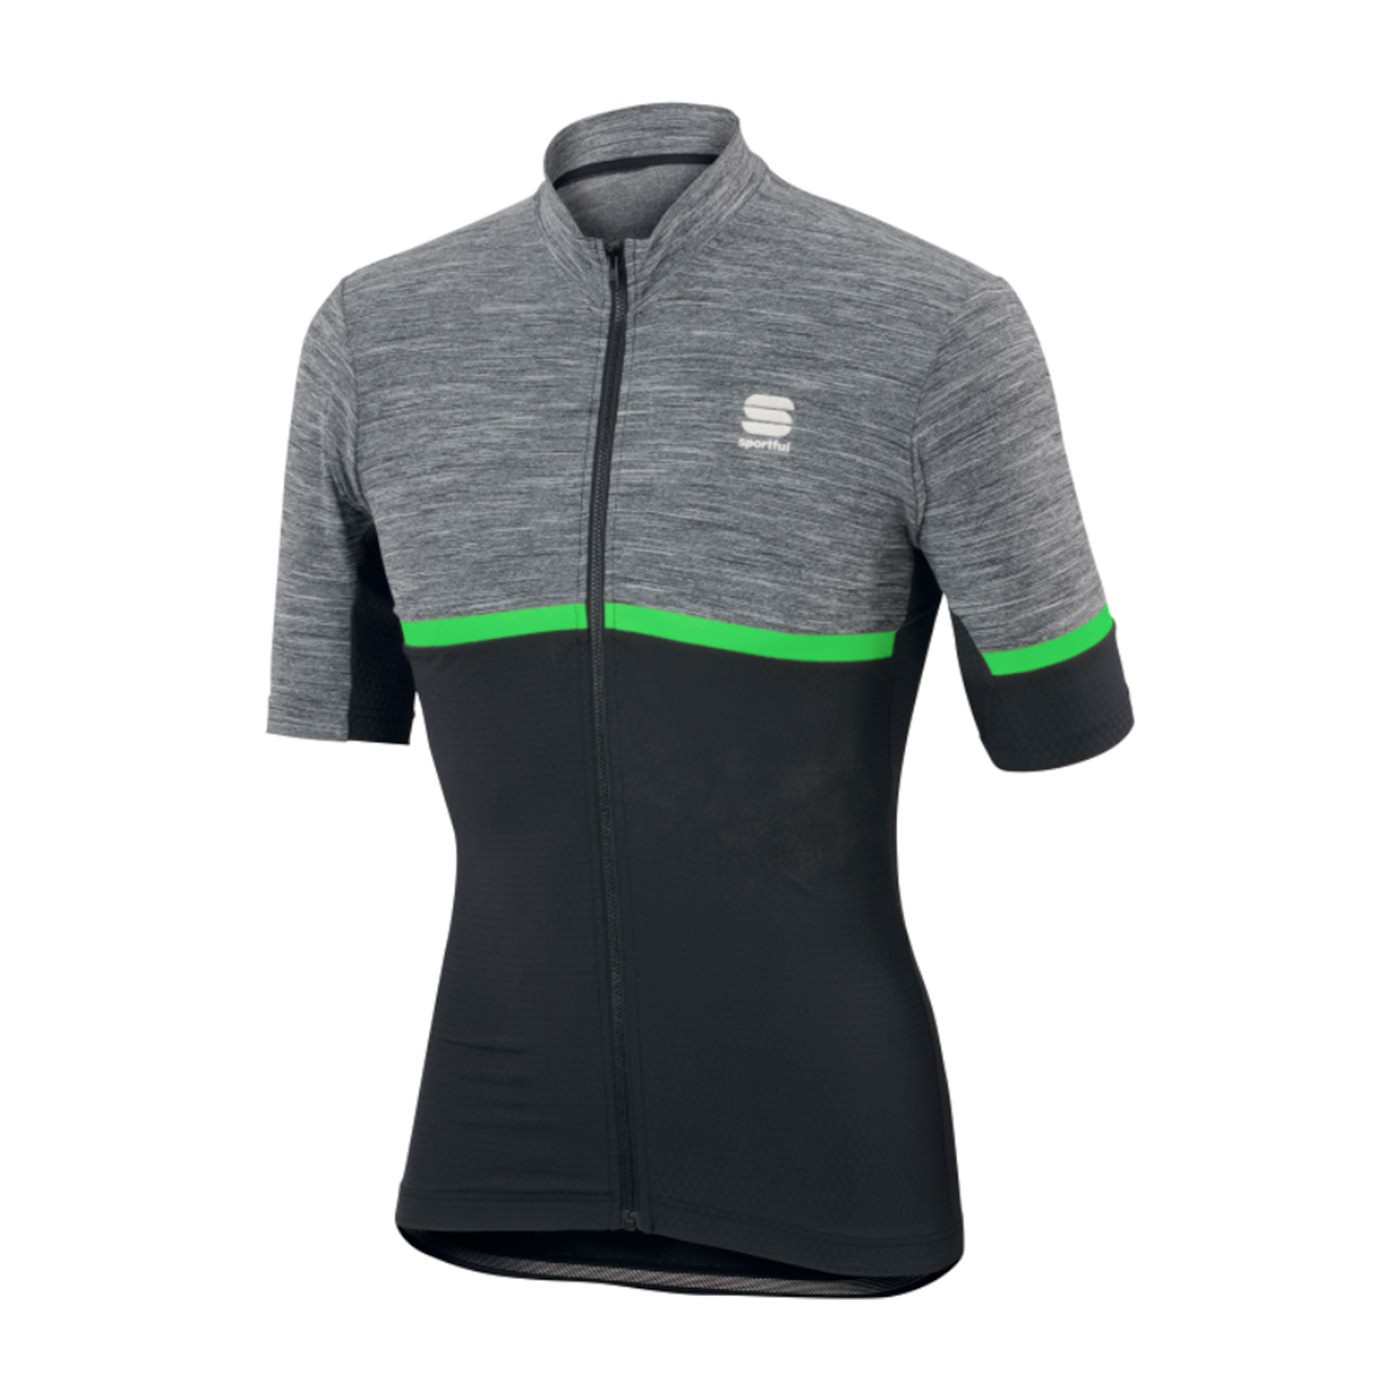 Sportful giara fietsshirt met korte mouwen antraciet zwart fluo groen